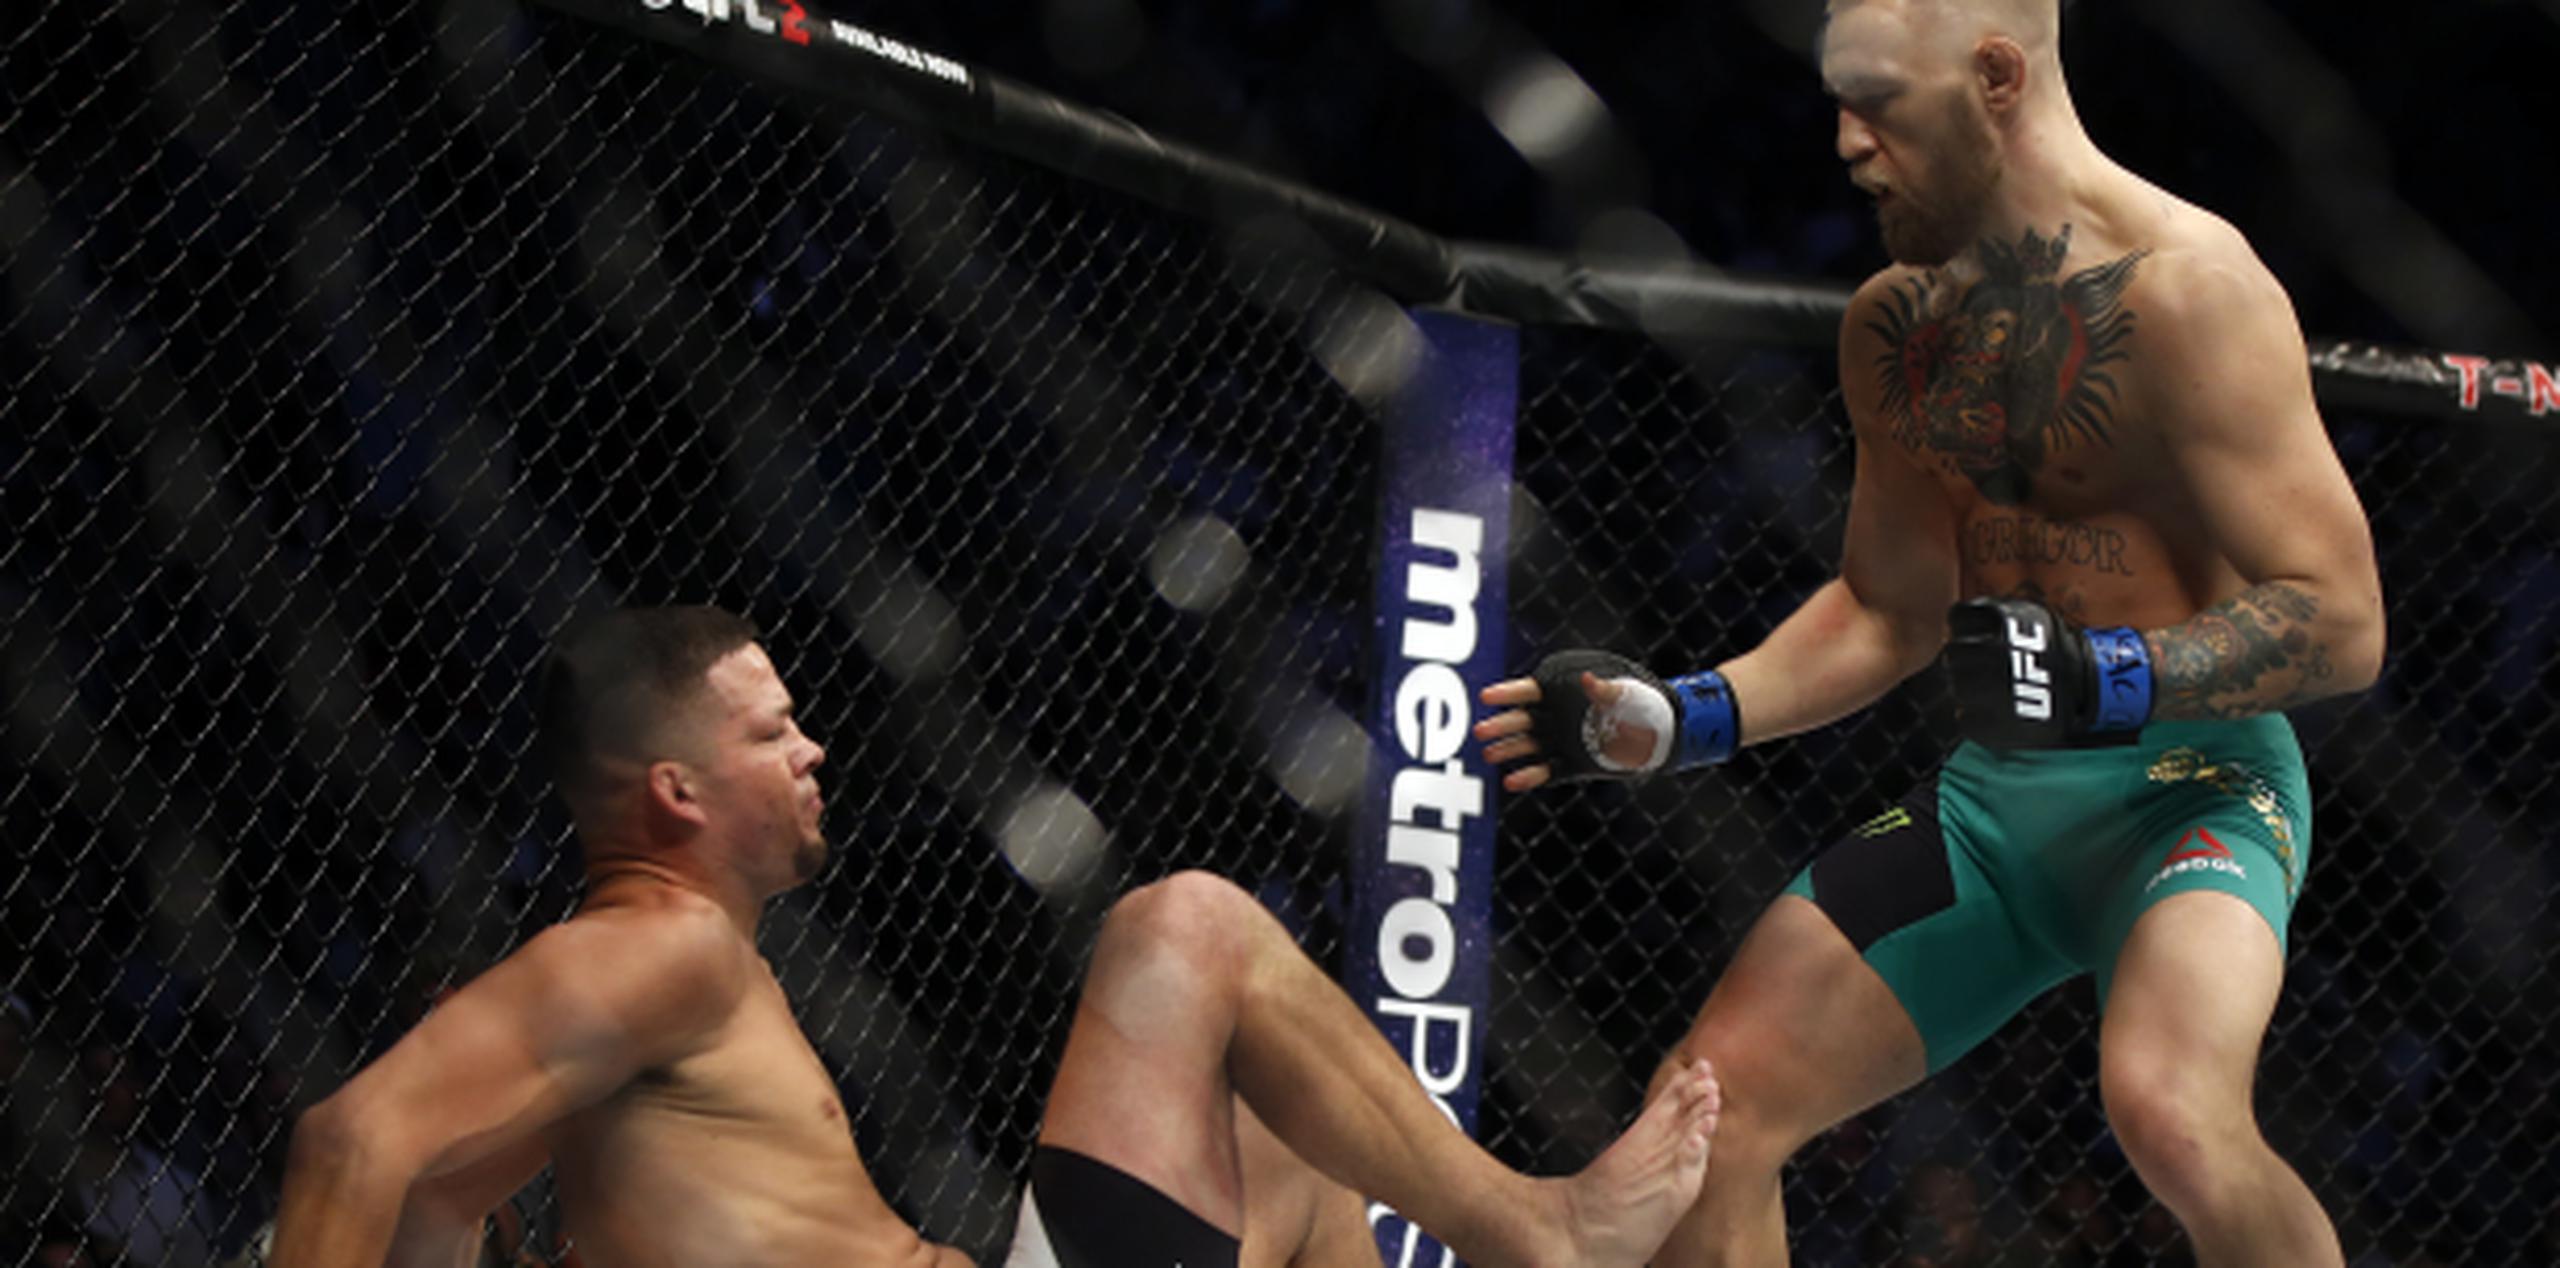 McGregor empató su rivalidad con Nate Díaz al superarlo por puntos en su combate de anoche en UFC 202, una revancha de su combate en marzo pasado. (AP)